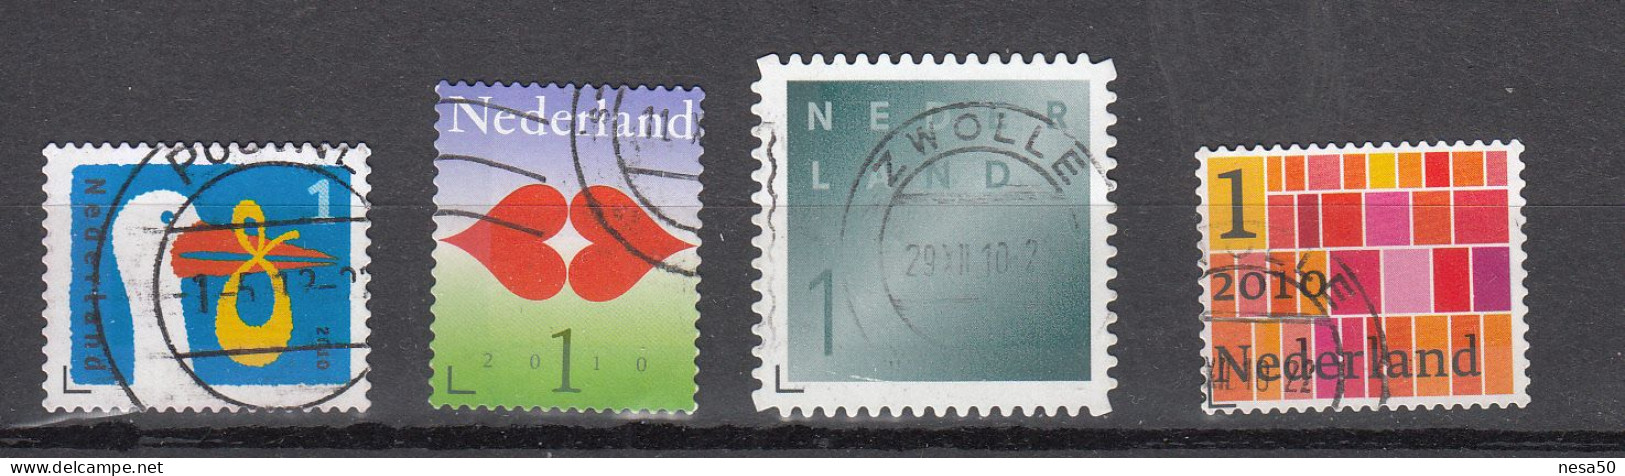 Nederland 2010 Nvph Nr 2744 - 2747, Mi Nr 2756 - 2758, Geboortezegel, Liefde, Rouw + Zakenpostzegel - Usados